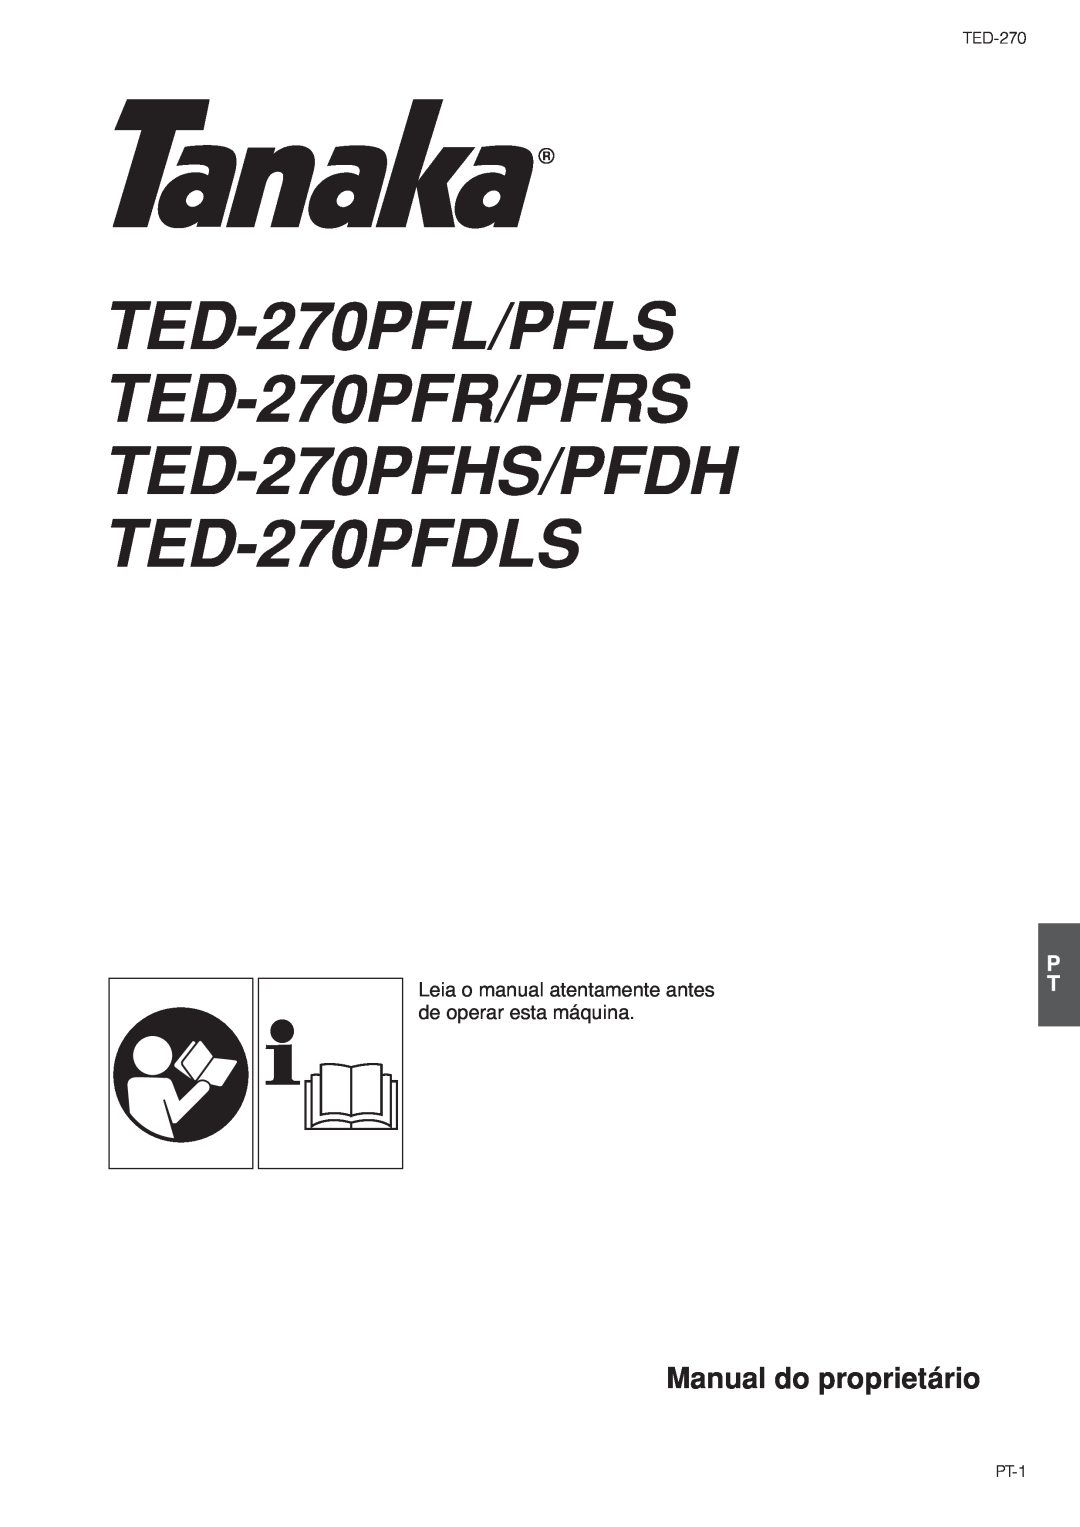 Tanaka TED-270PFL/PFLS, TED-270PFDLS Manual do proprietário, Leia o manual atentamente antes de operar esta máquina, PT-1 